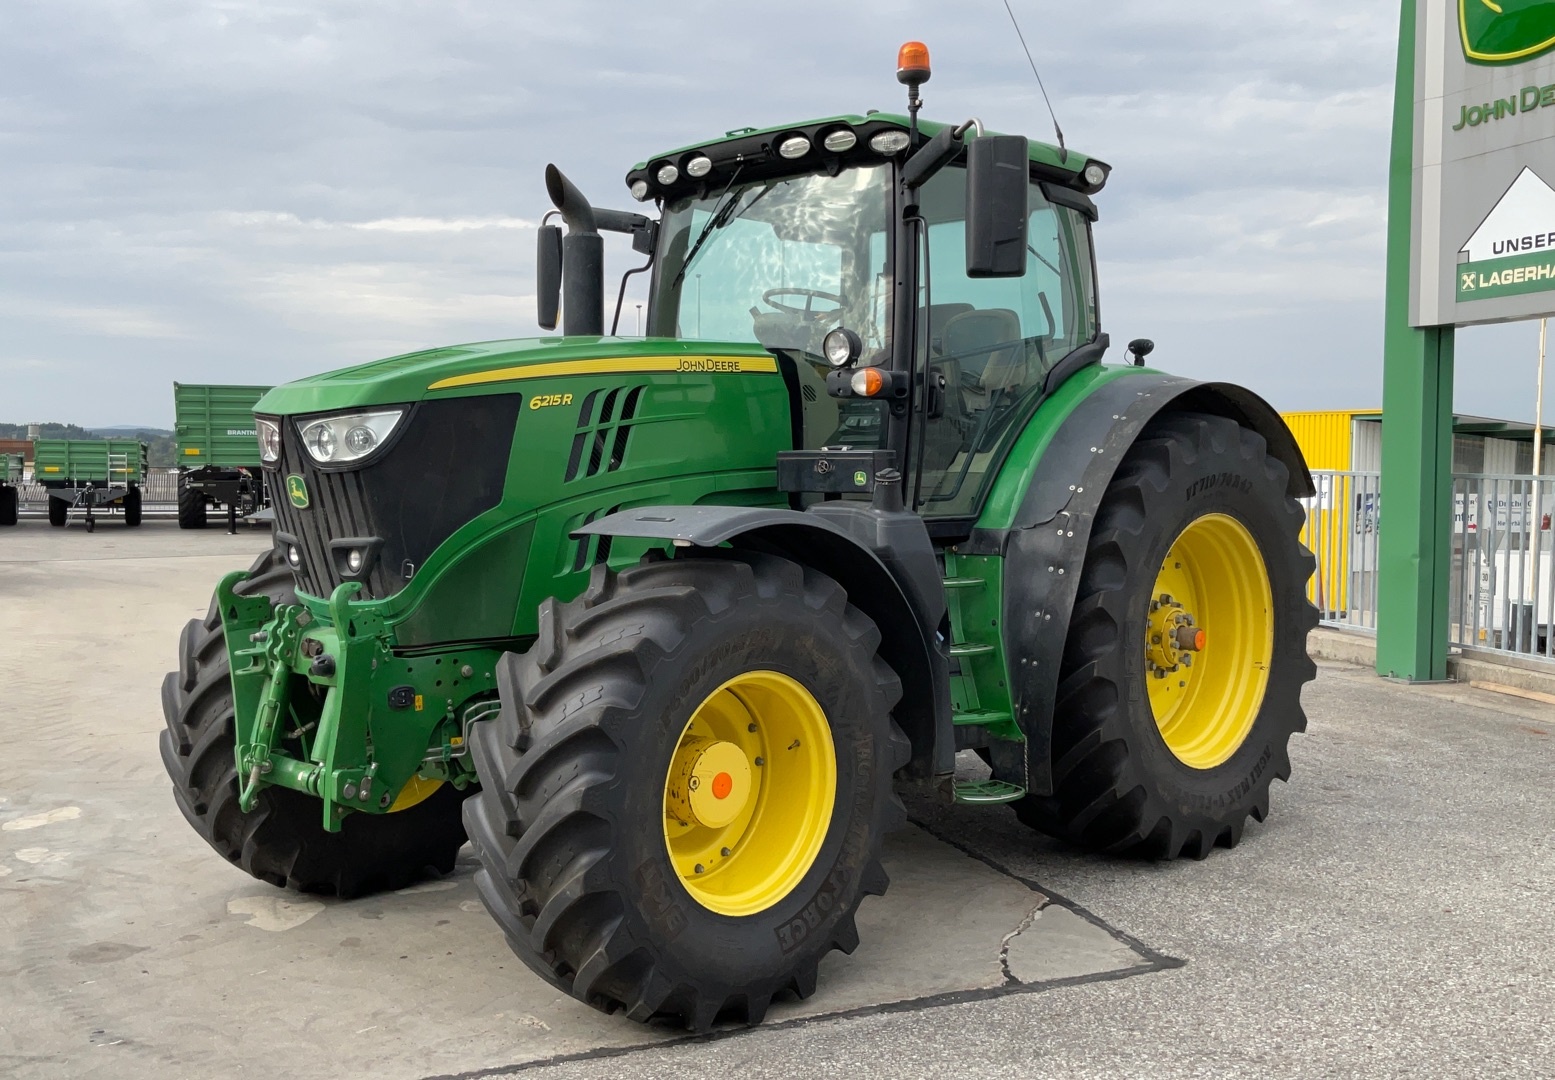 John Deere 6215 R tractor €96,583